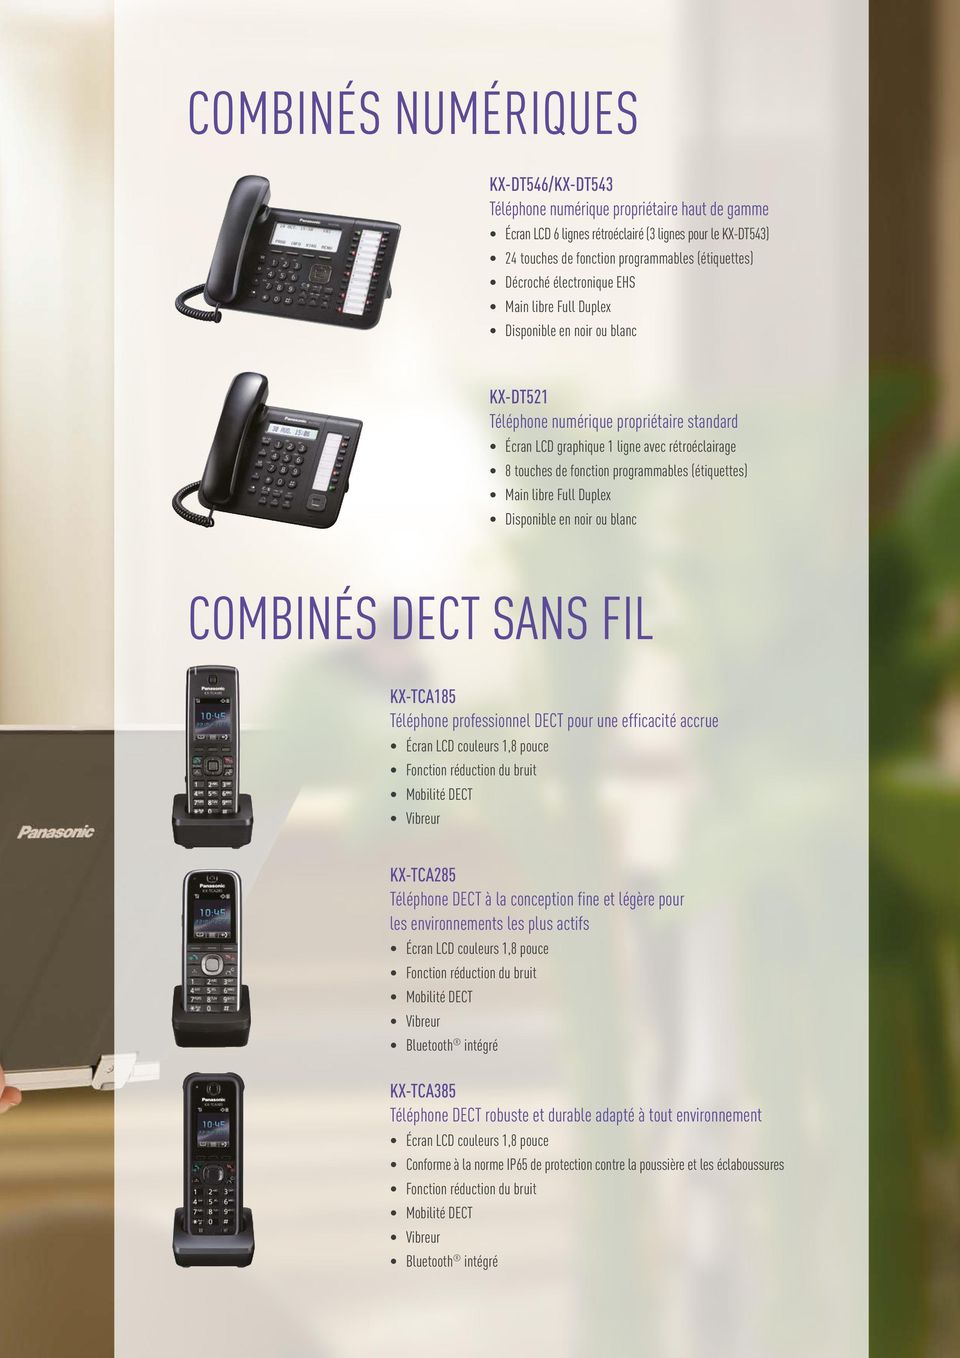 programmables (étiquettes) Main libre Full Duplex Disponible en noir ou blanc COMBINÉS DECT SANS FIL KX-TCA185 Téléphone professionnel DECT pour une efficacité accrue Écran LCD couleurs 1,8 pouce